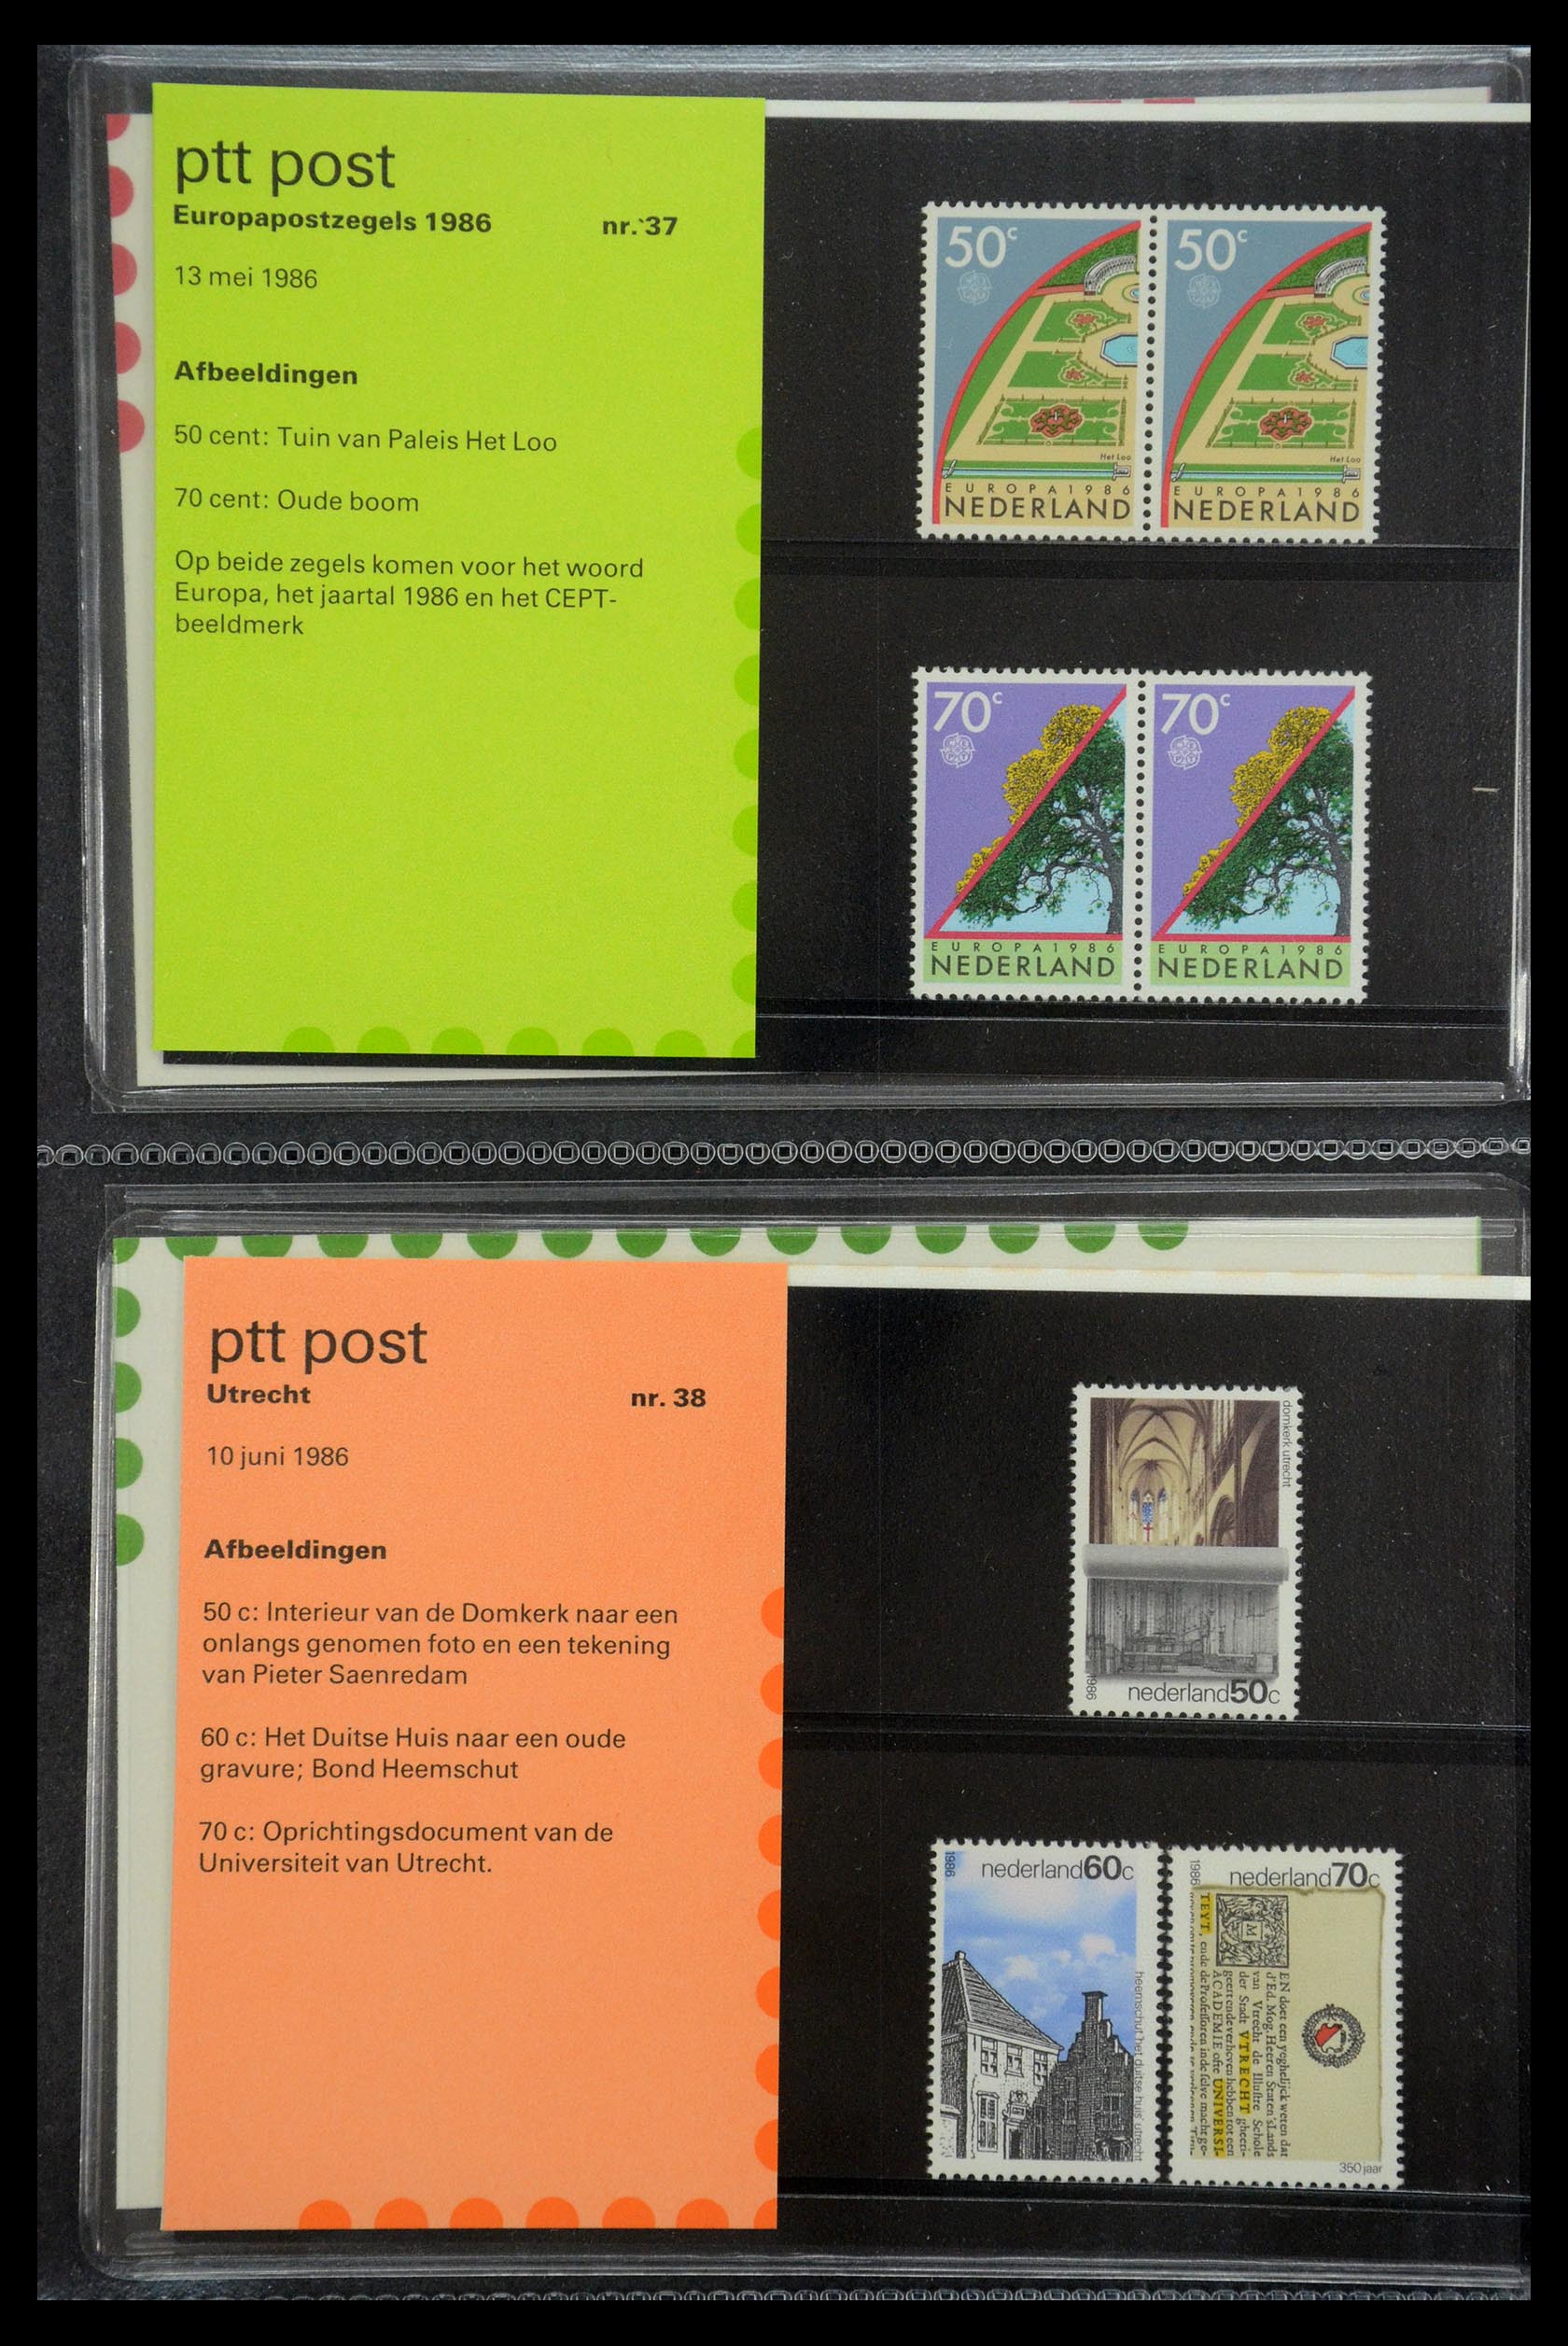 35187 019 - Stamp Collection 35187 Netherlands PTT presentation packs 1982-2019!